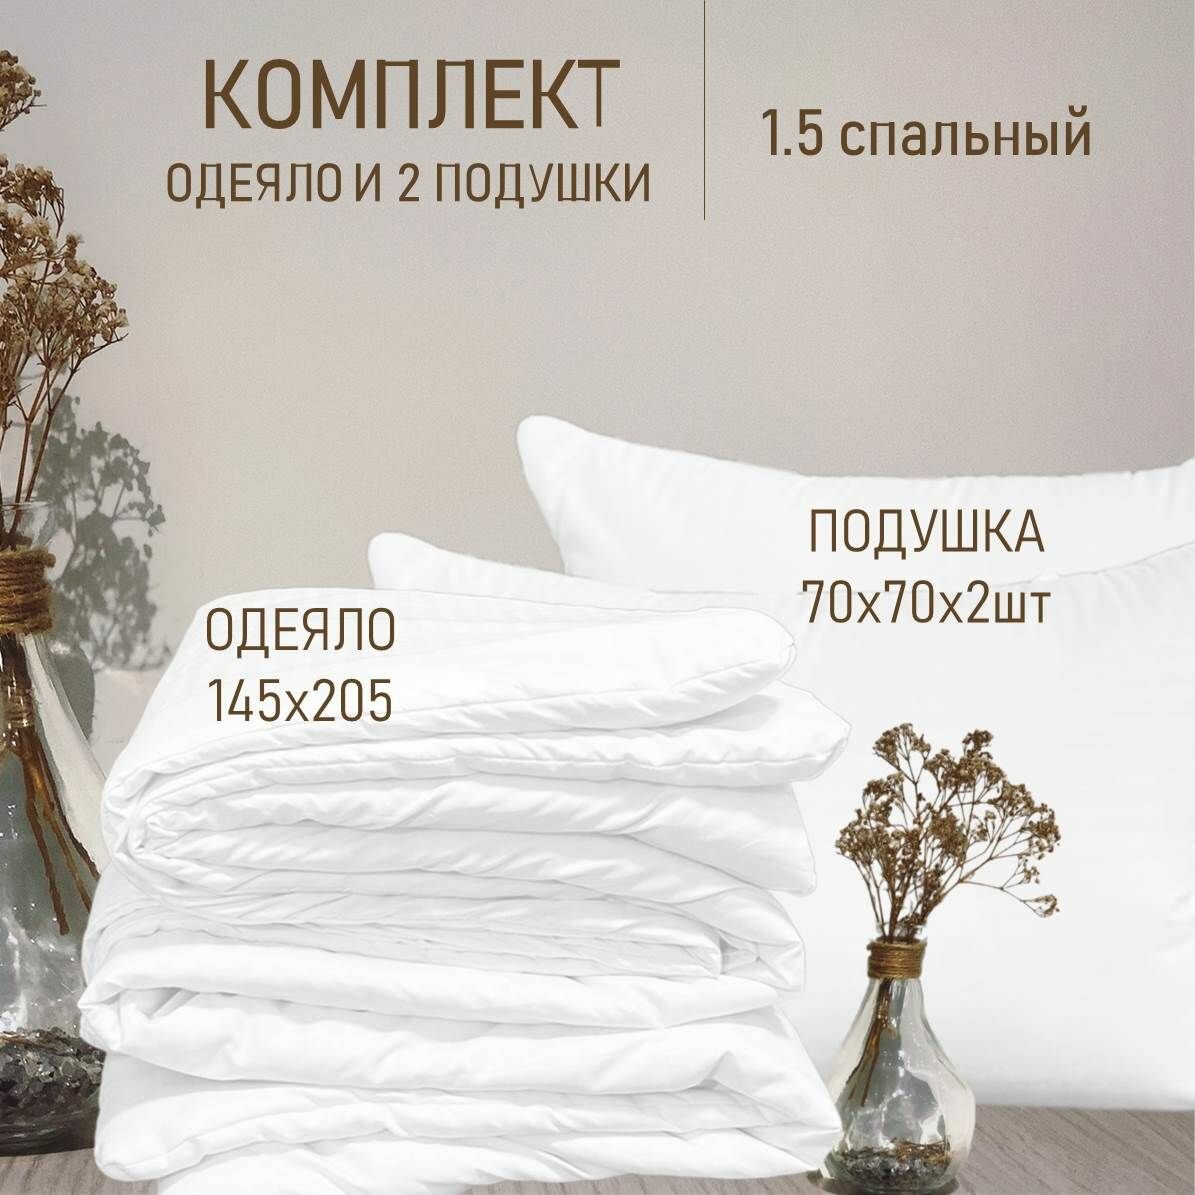 Комплект одеяло 1.5 спальное 145x205 +2 подушки 70x70 Всесезонный, цена от производителя, комплект из 3 шт